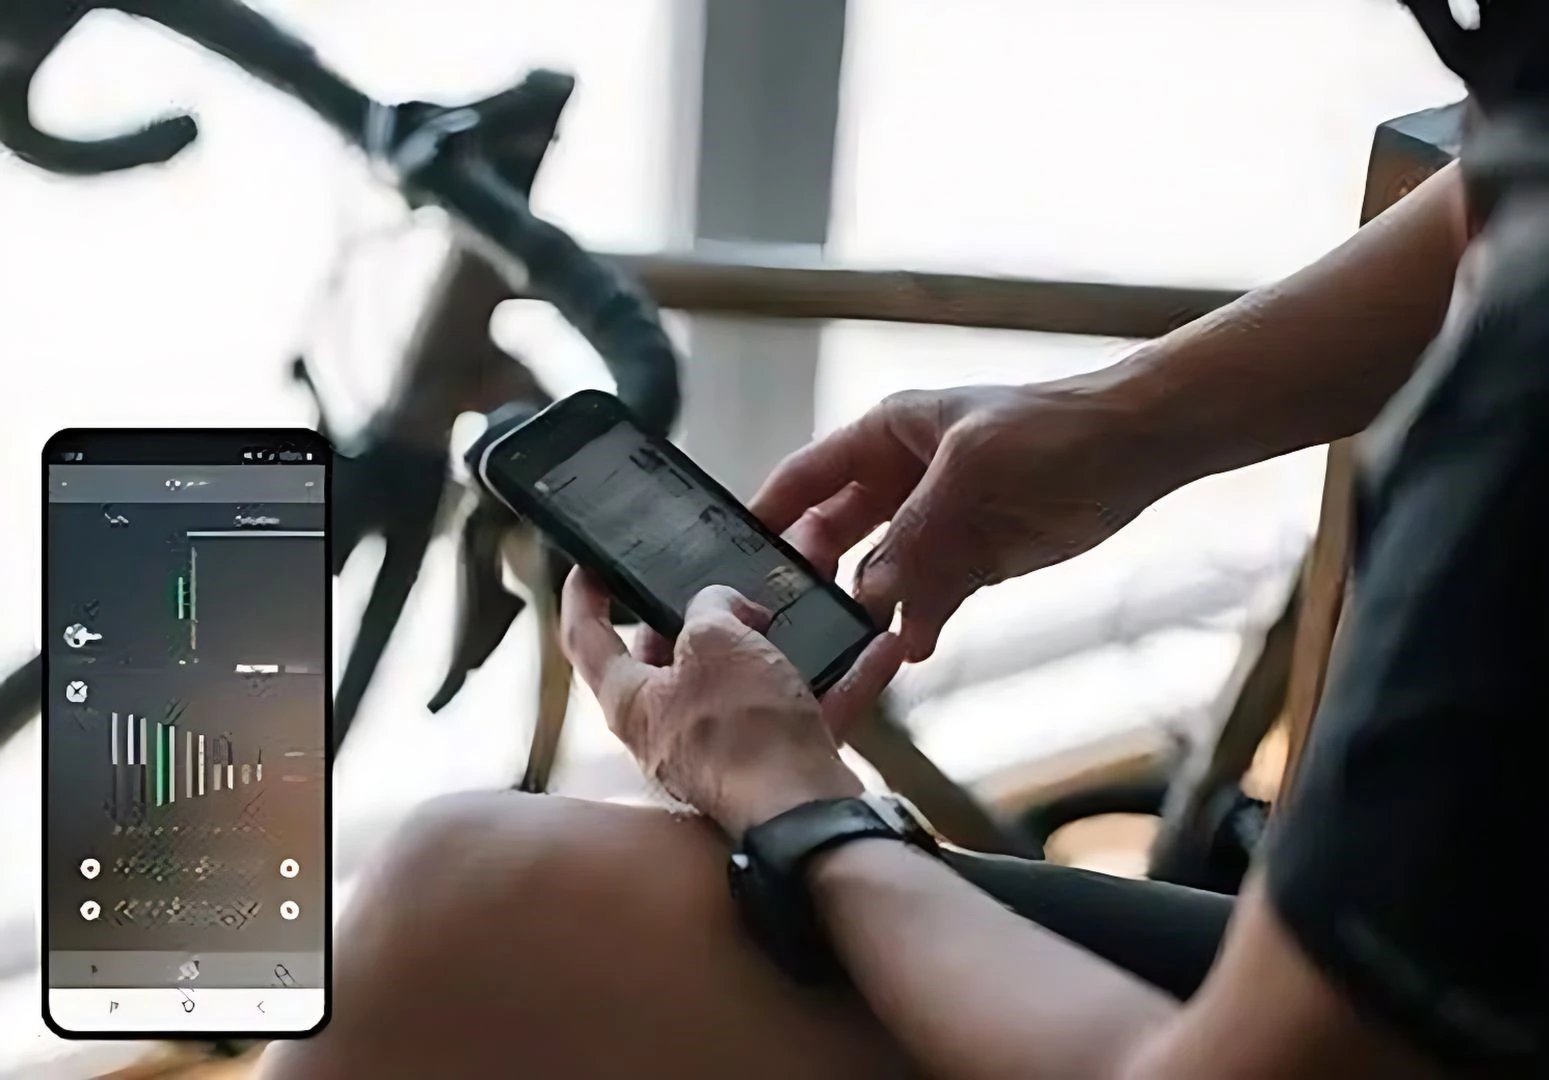 afbeelding van de Shimano E-Toube app met op de achtergrond een fiets die gebruik kan maken van deze app van Shimano